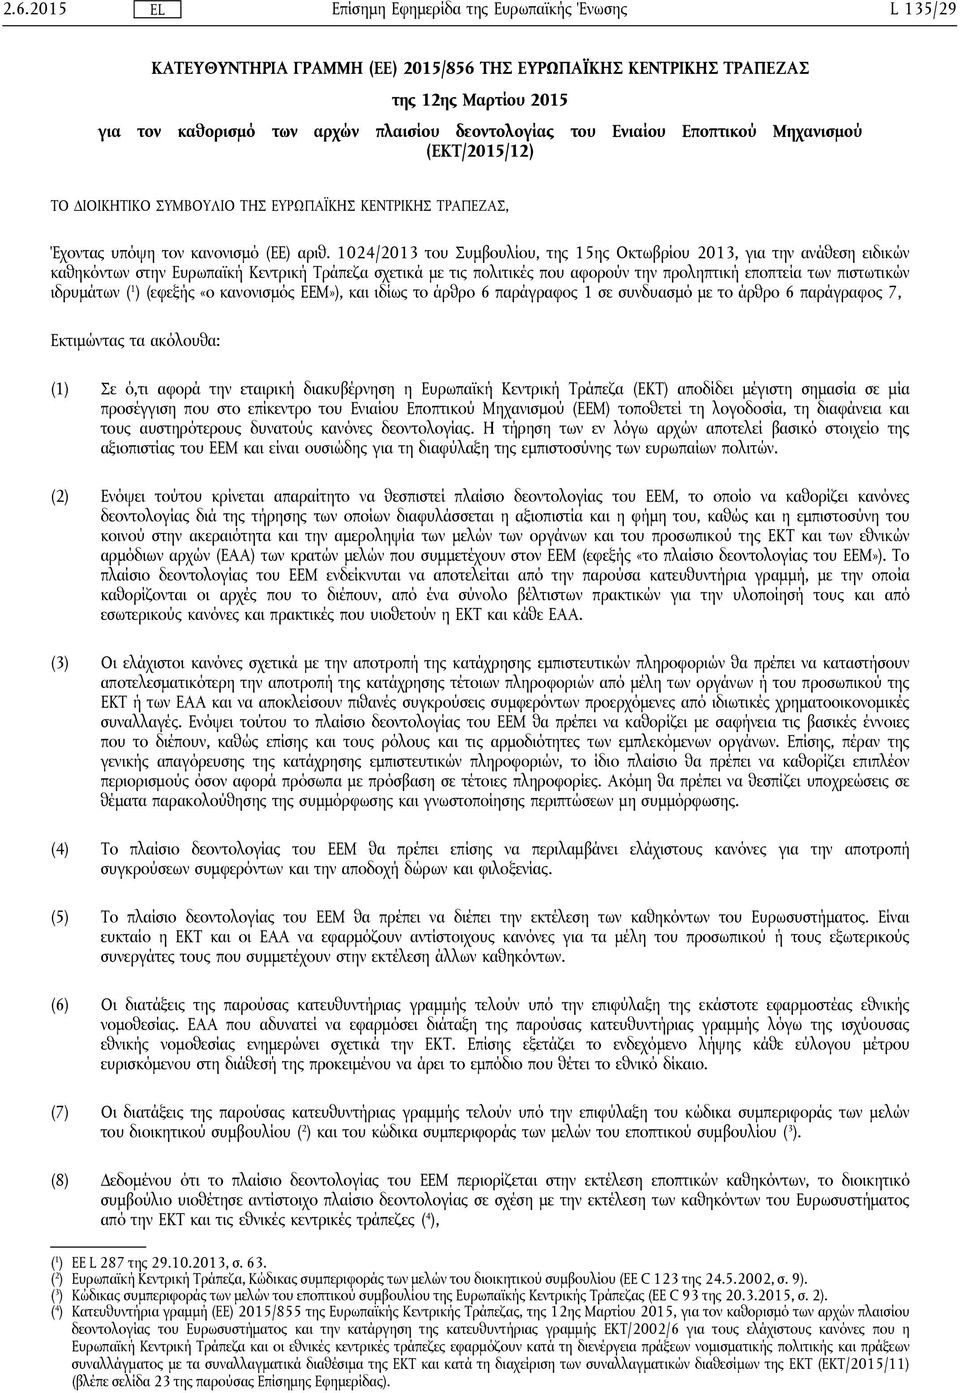 1024/2013 του Συμβουλίου, της 15ης Οκτωβρίου 2013, για την ανάθεση ειδικών καθηκόντων στην Ευρωπαϊκή Κεντρική Τράπεζα σχετικά με τις πολιτικές που αφορούν την προληπτική εποπτεία των πιστωτικών